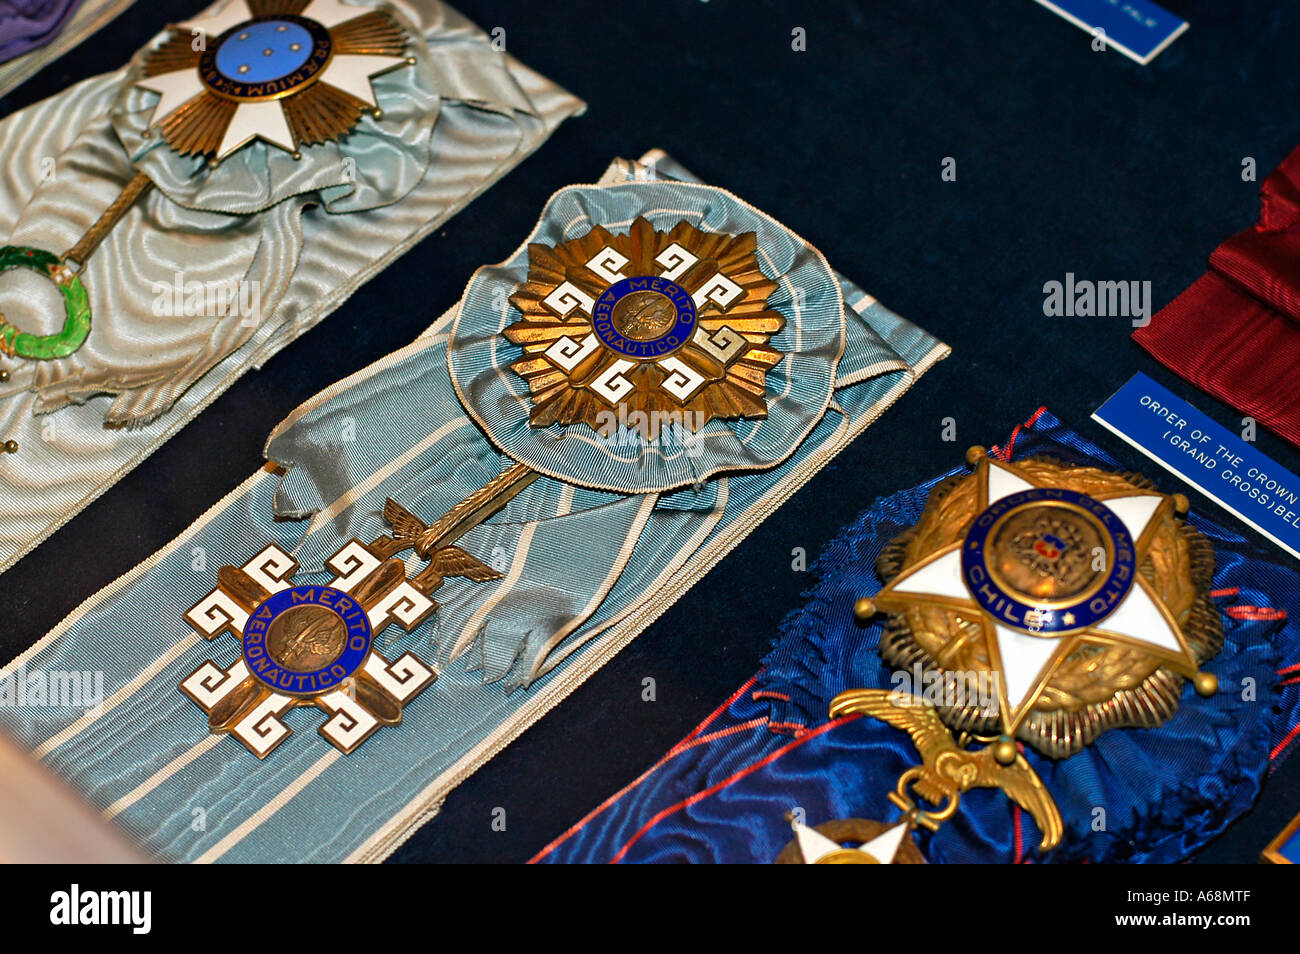 Krieg Medaillen auf dem display Stockfoto